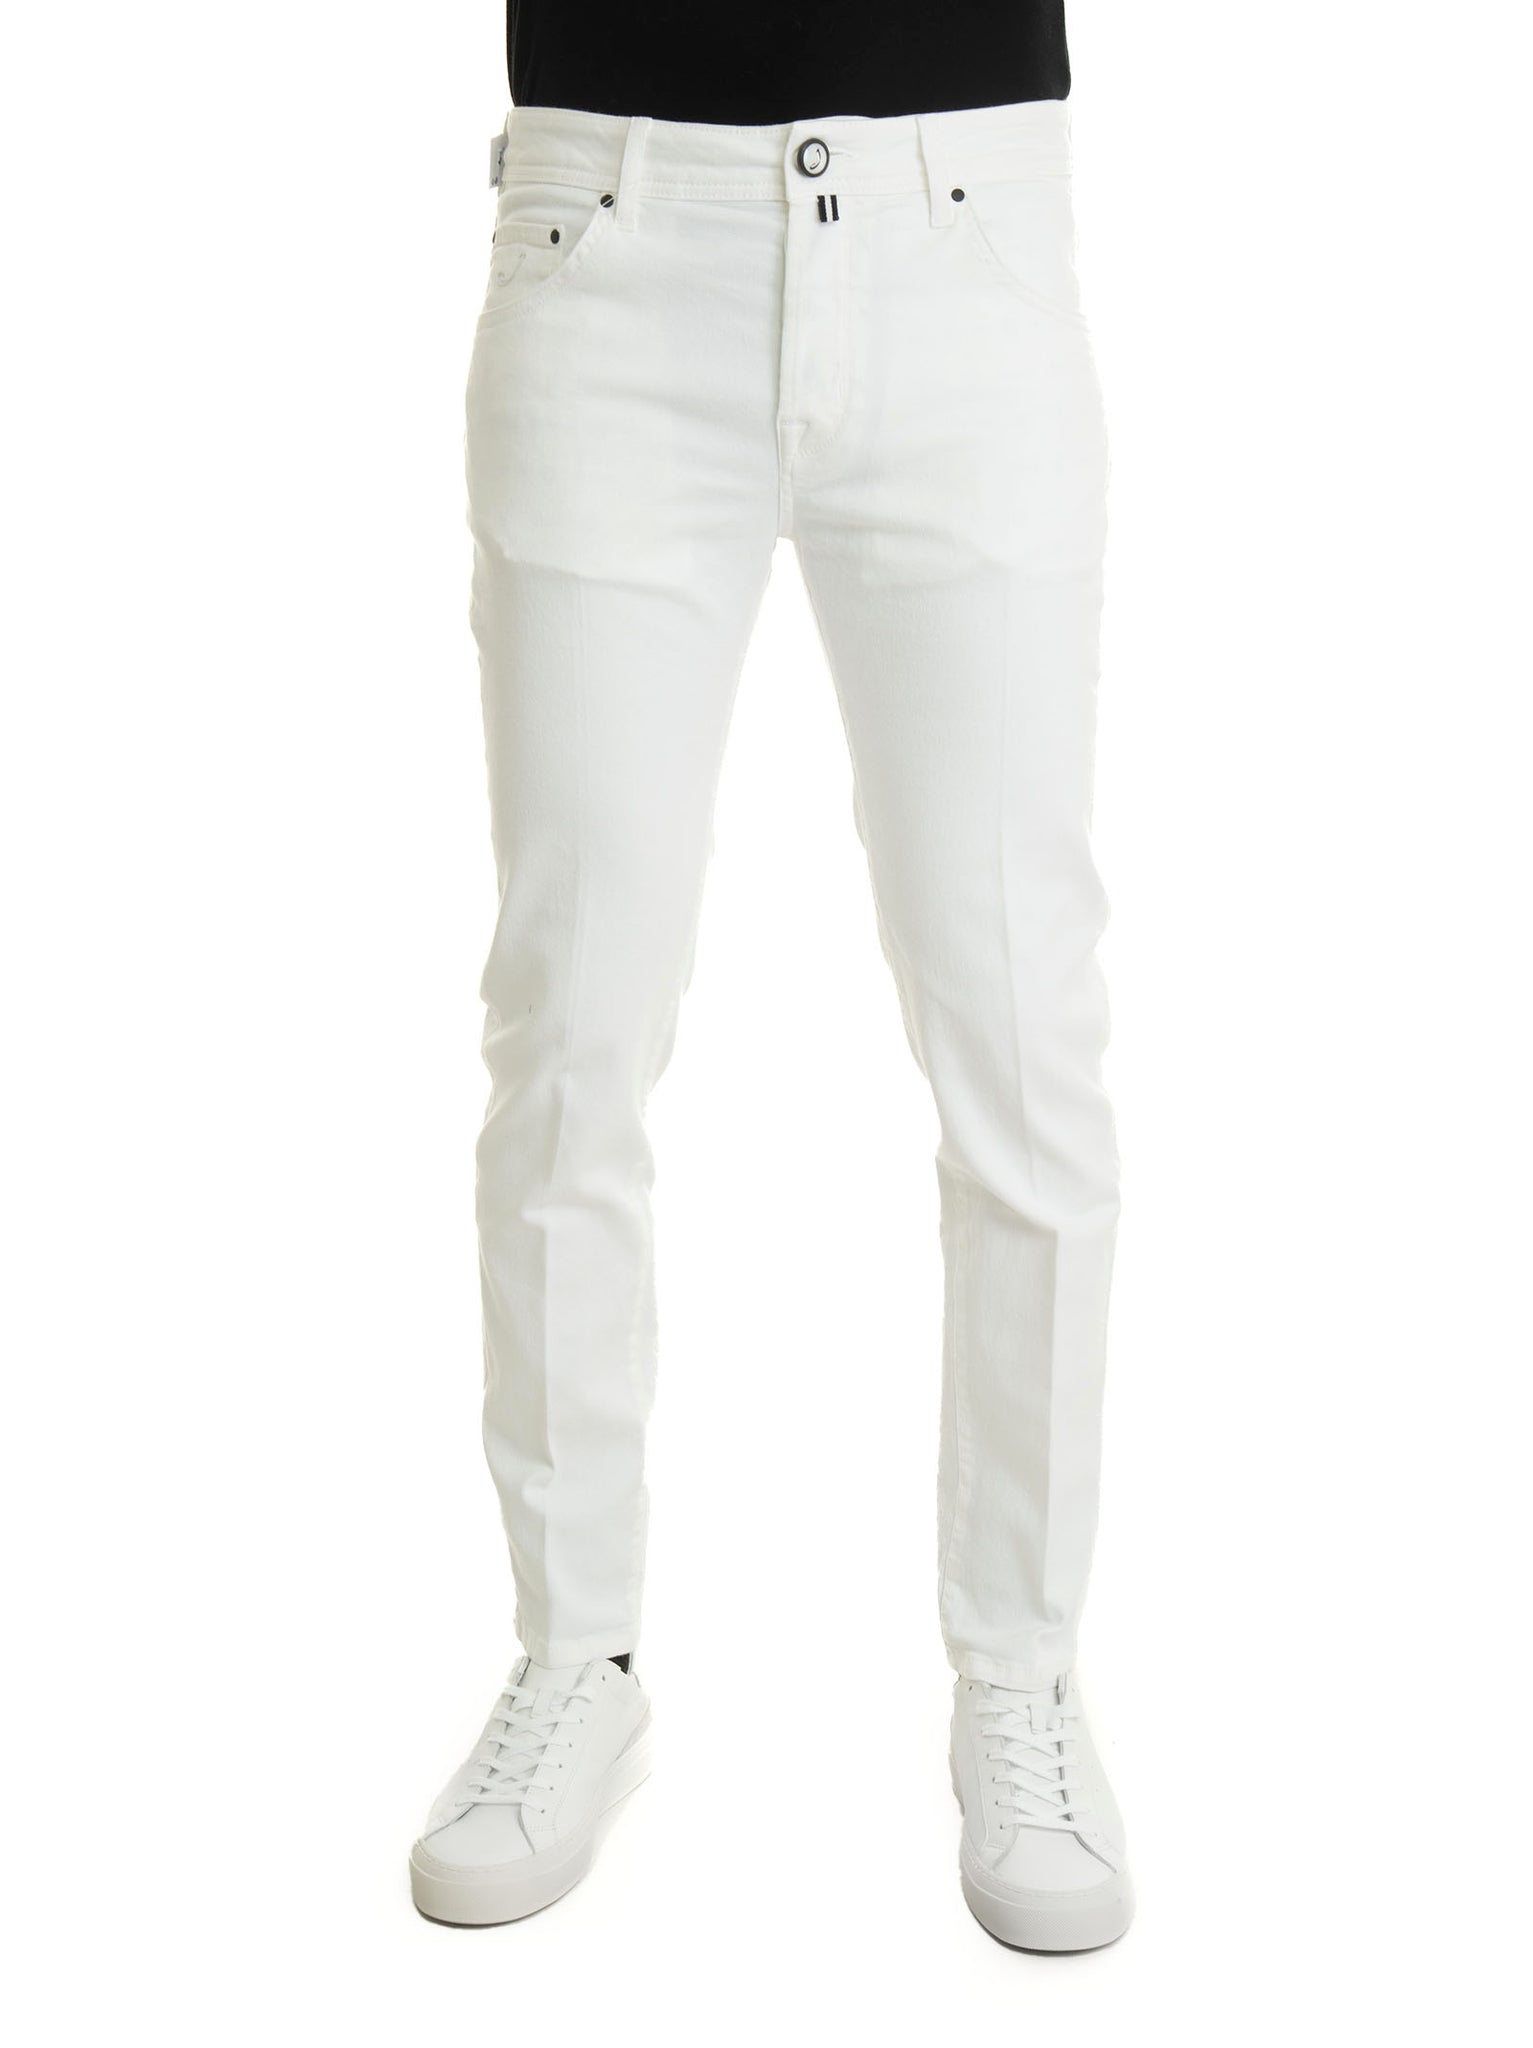 Jacob Cohen x Histores Men's White Denim 5-pocket Jeans